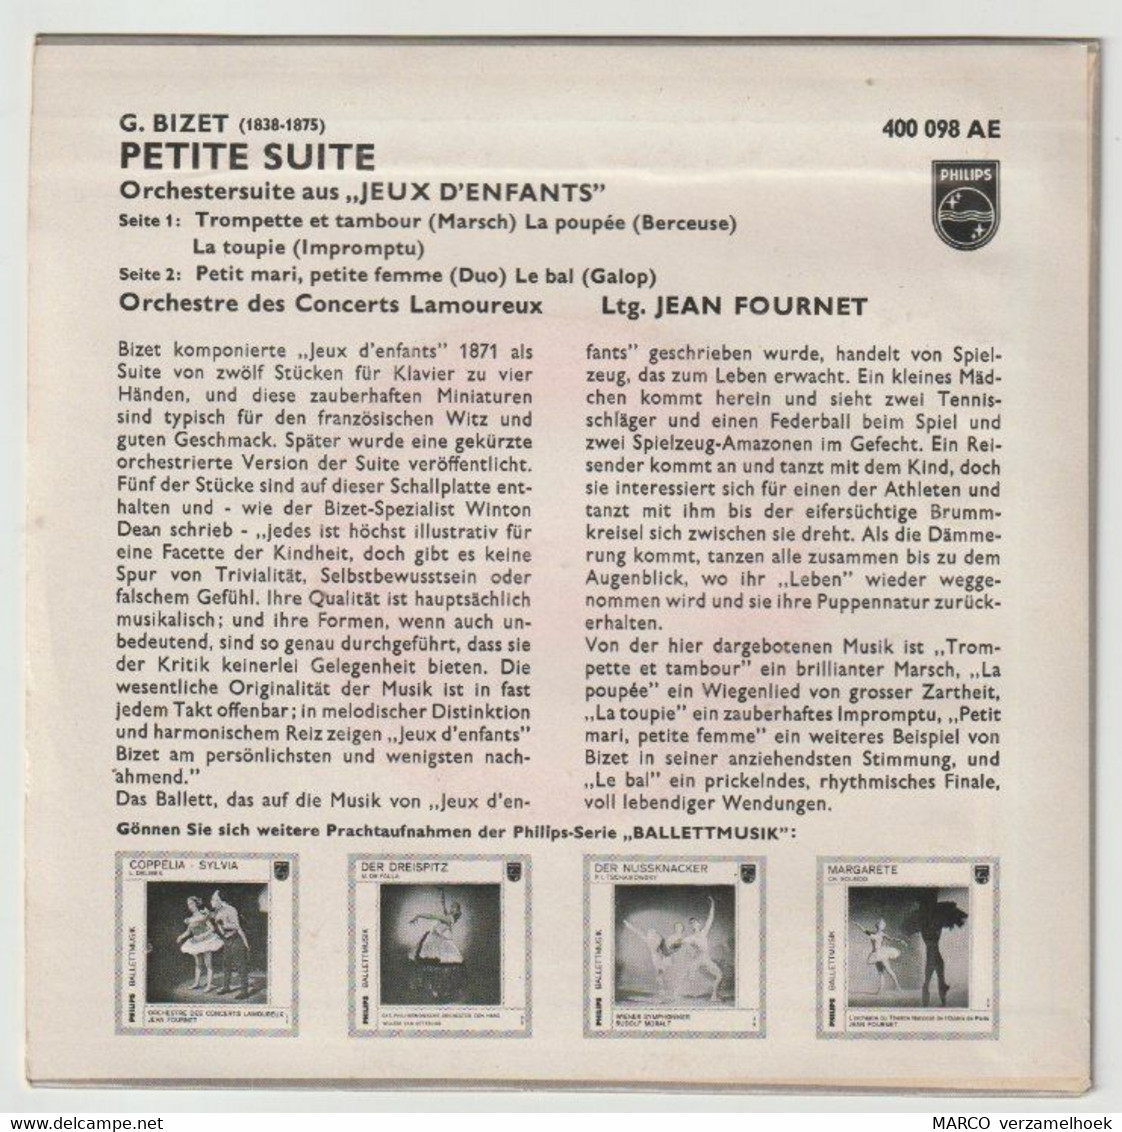 45T Single Jeux D'enfants G. Bizet - Petite Suite PHILIPS 400 098 - Oper & Operette